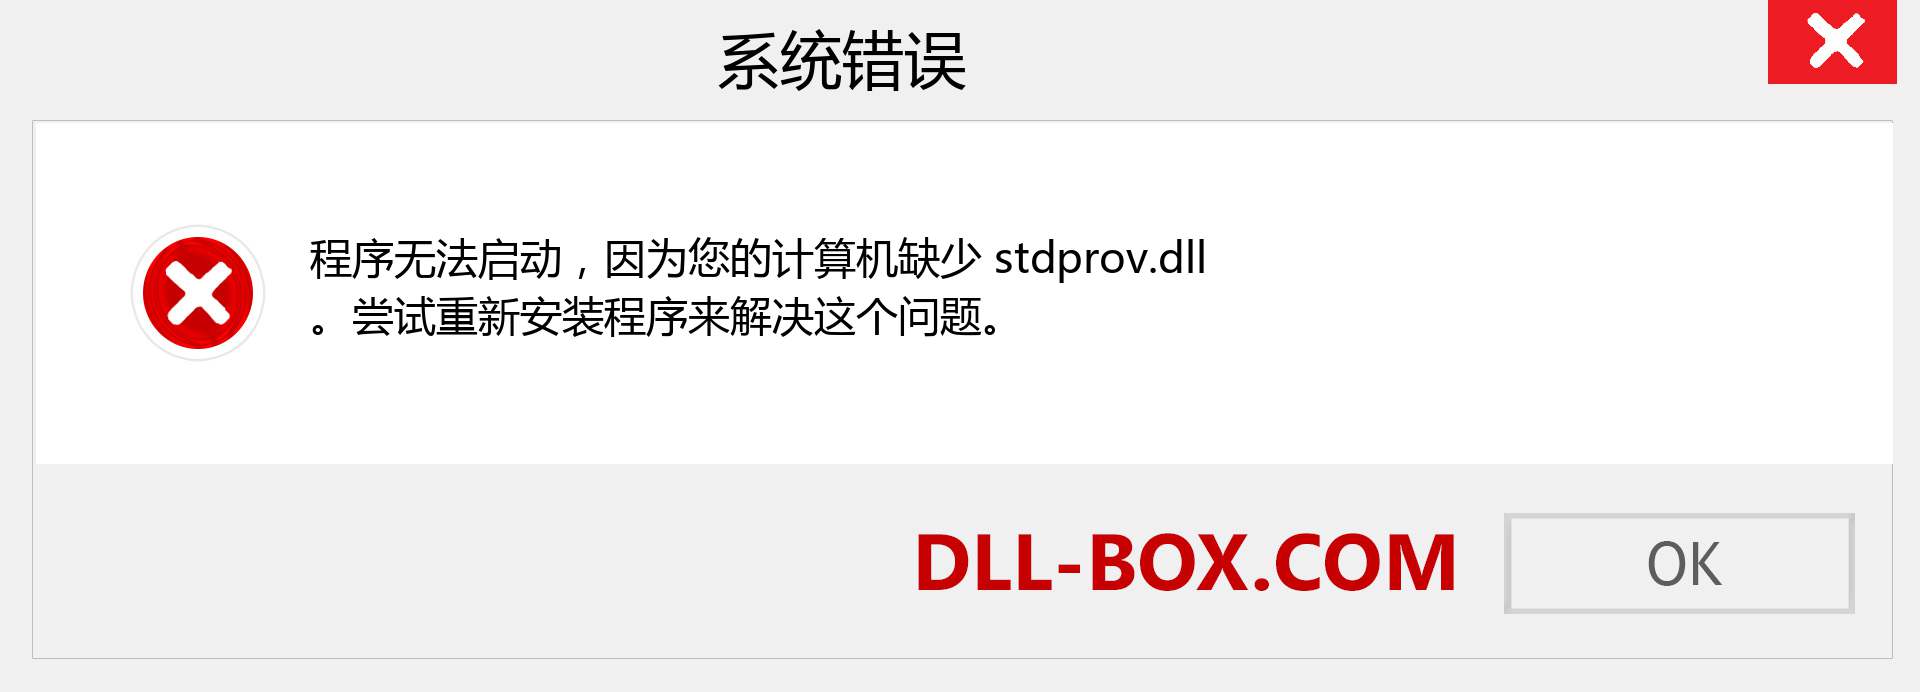 stdprov.dll 文件丢失？。 适用于 Windows 7、8、10 的下载 - 修复 Windows、照片、图像上的 stdprov dll 丢失错误